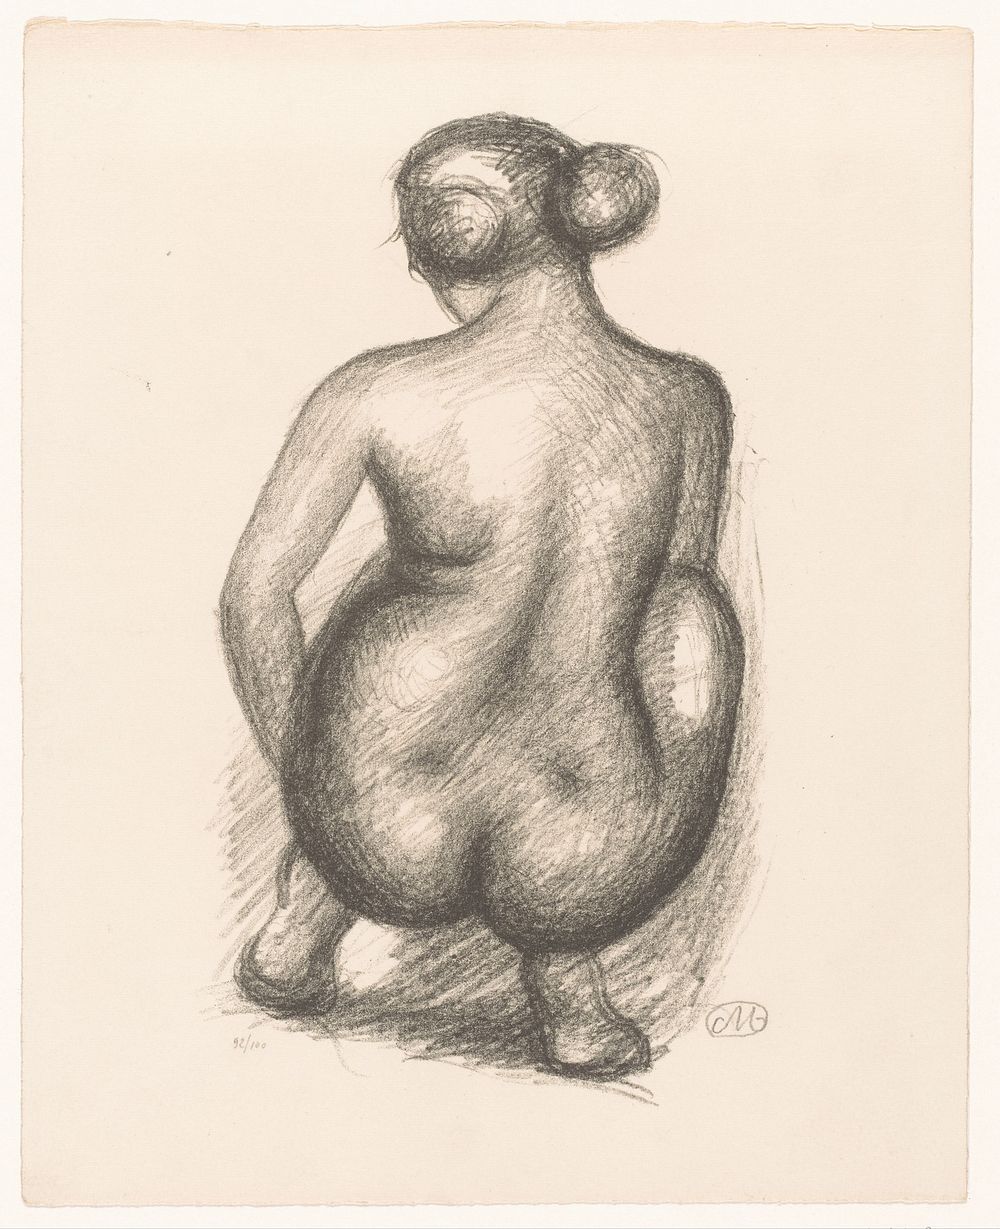 Hurkende naakte vrouw op de rug gezien (1925) by Aristide Maillol